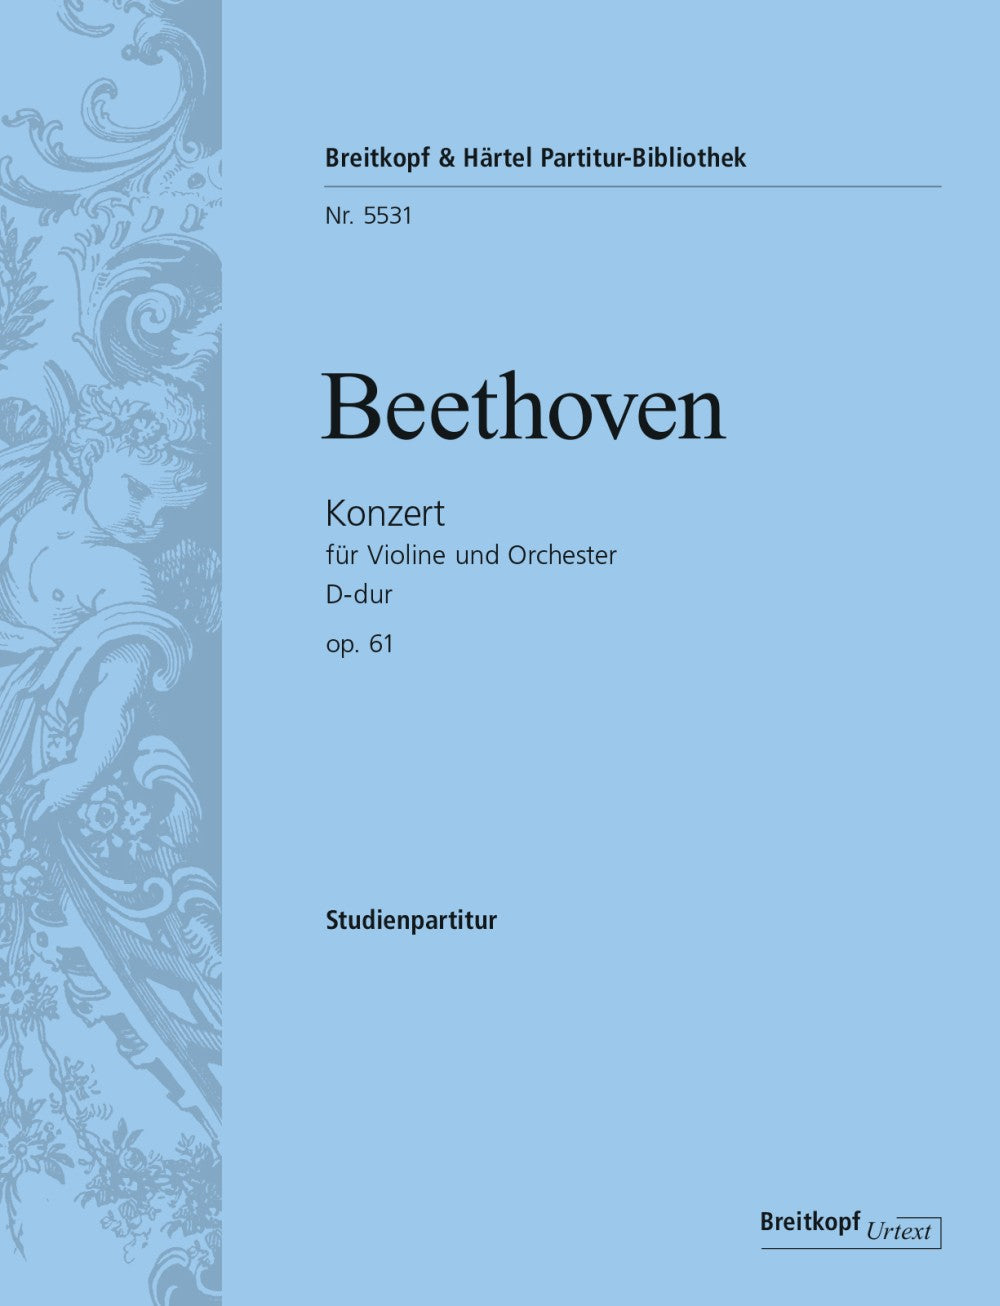 Beethoven Concerto for Violin D major op 61